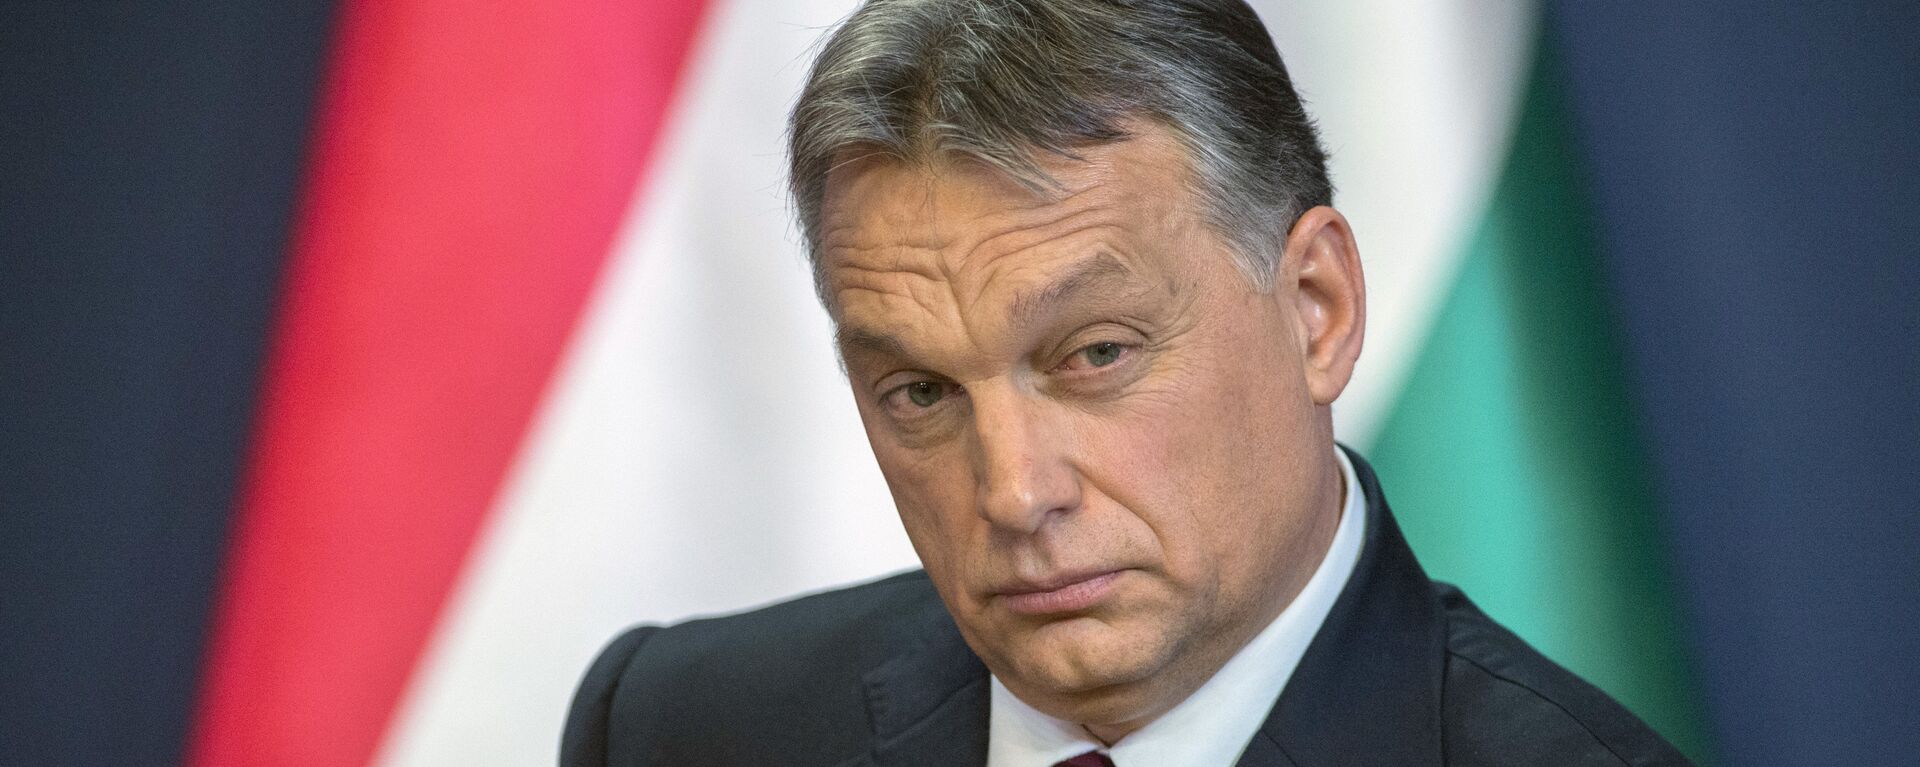 Премьер-министр Венгерской Республики Виктор Орбан. - Sputnik Латвия, 1920, 11.09.2017